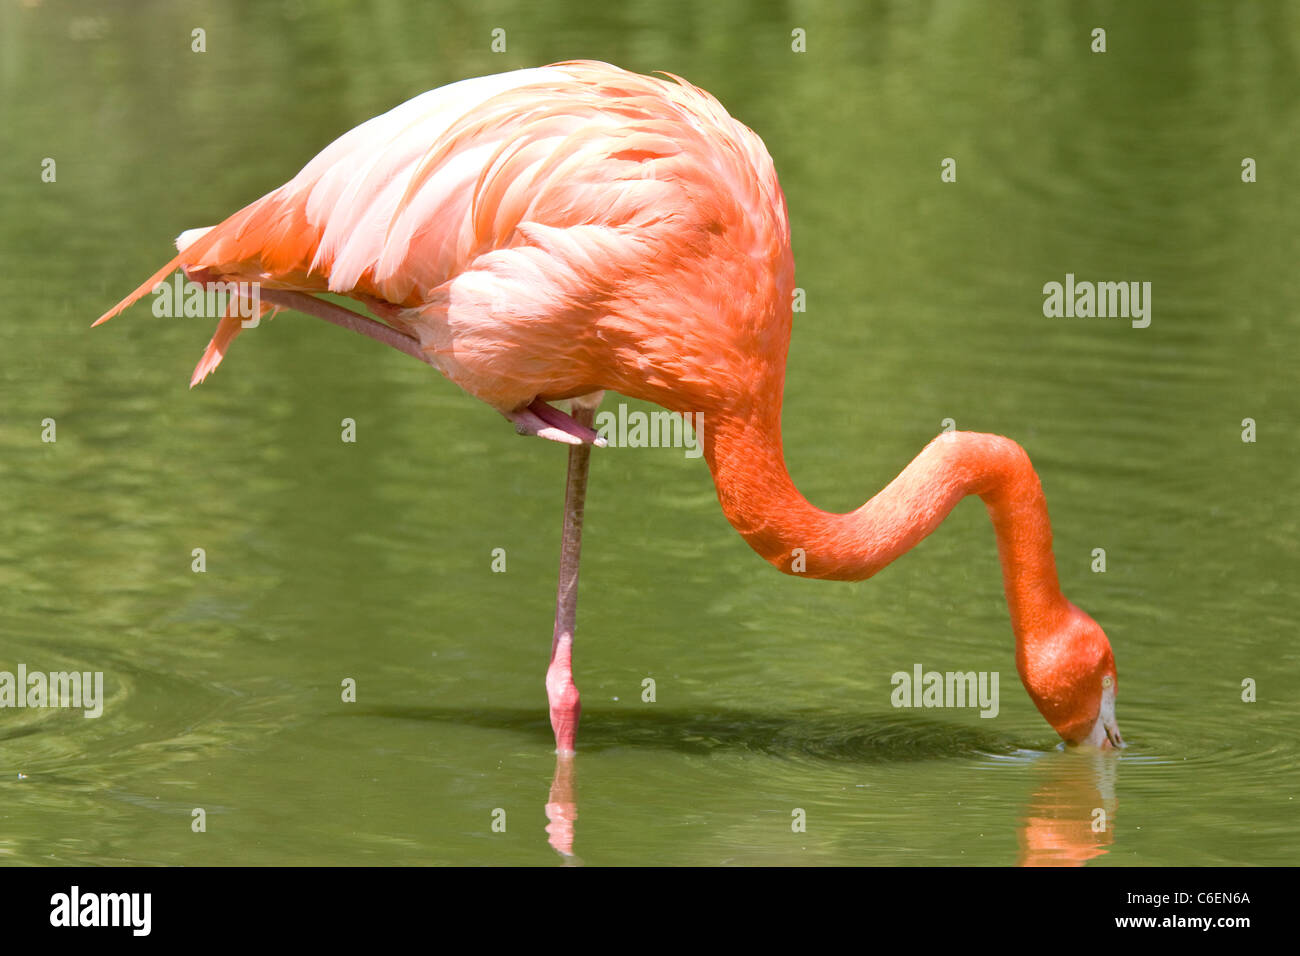 Flamingo stehen auf einem Bein Essen in Fluss Stockfoto